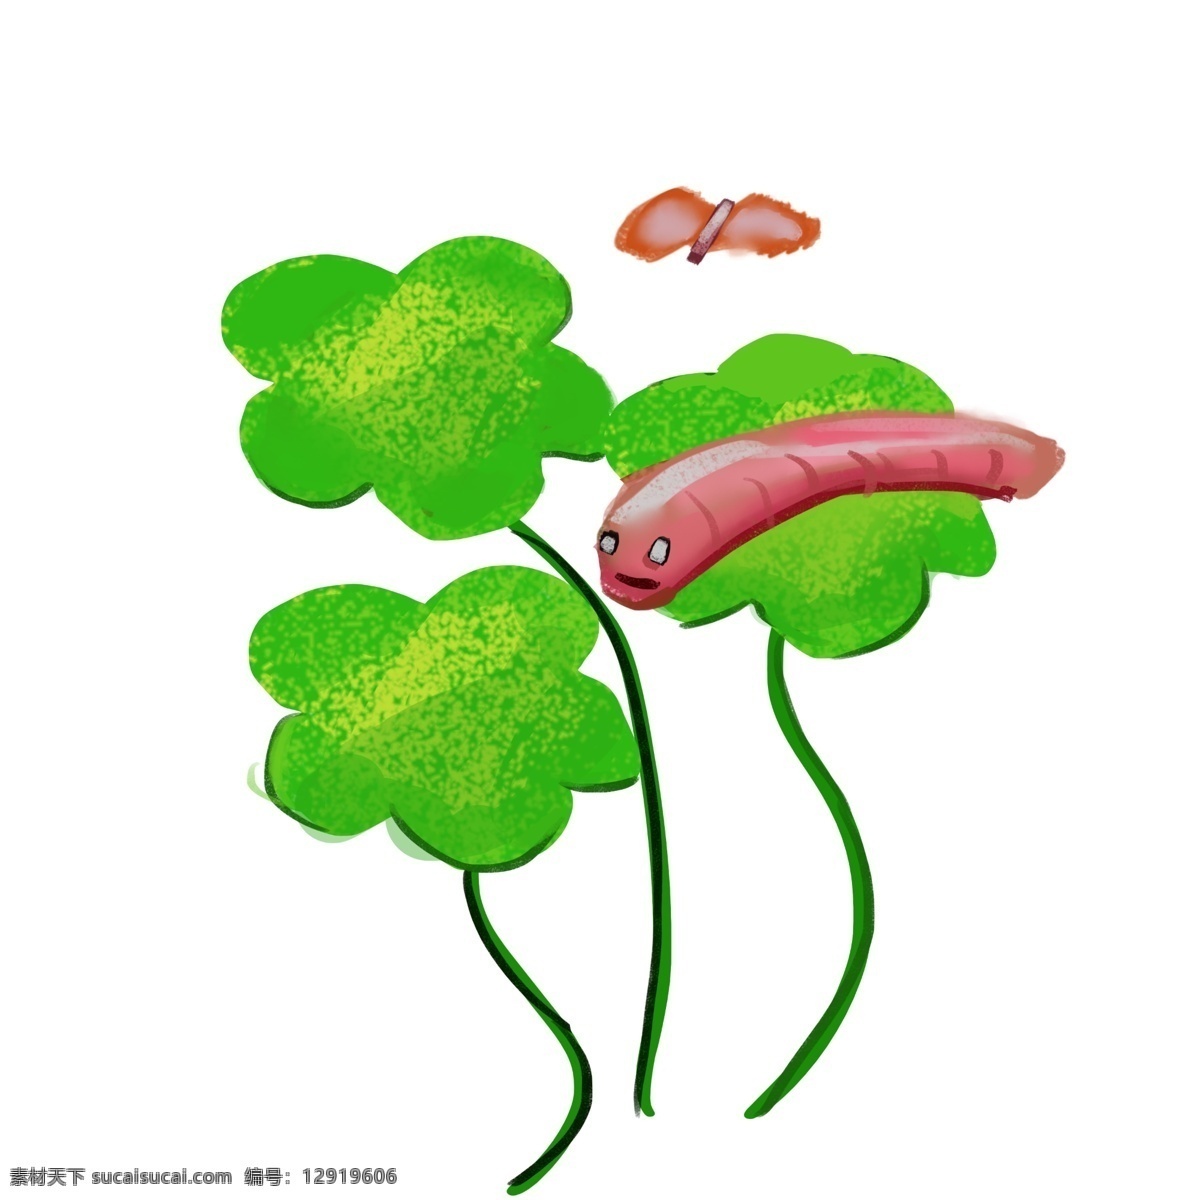 植物 藤条 卡通 插画 植物的藤条 卡通插画 绿植插画 植物插画 叶子 绿色的叶子 虫子 飞舞的蝴蝶